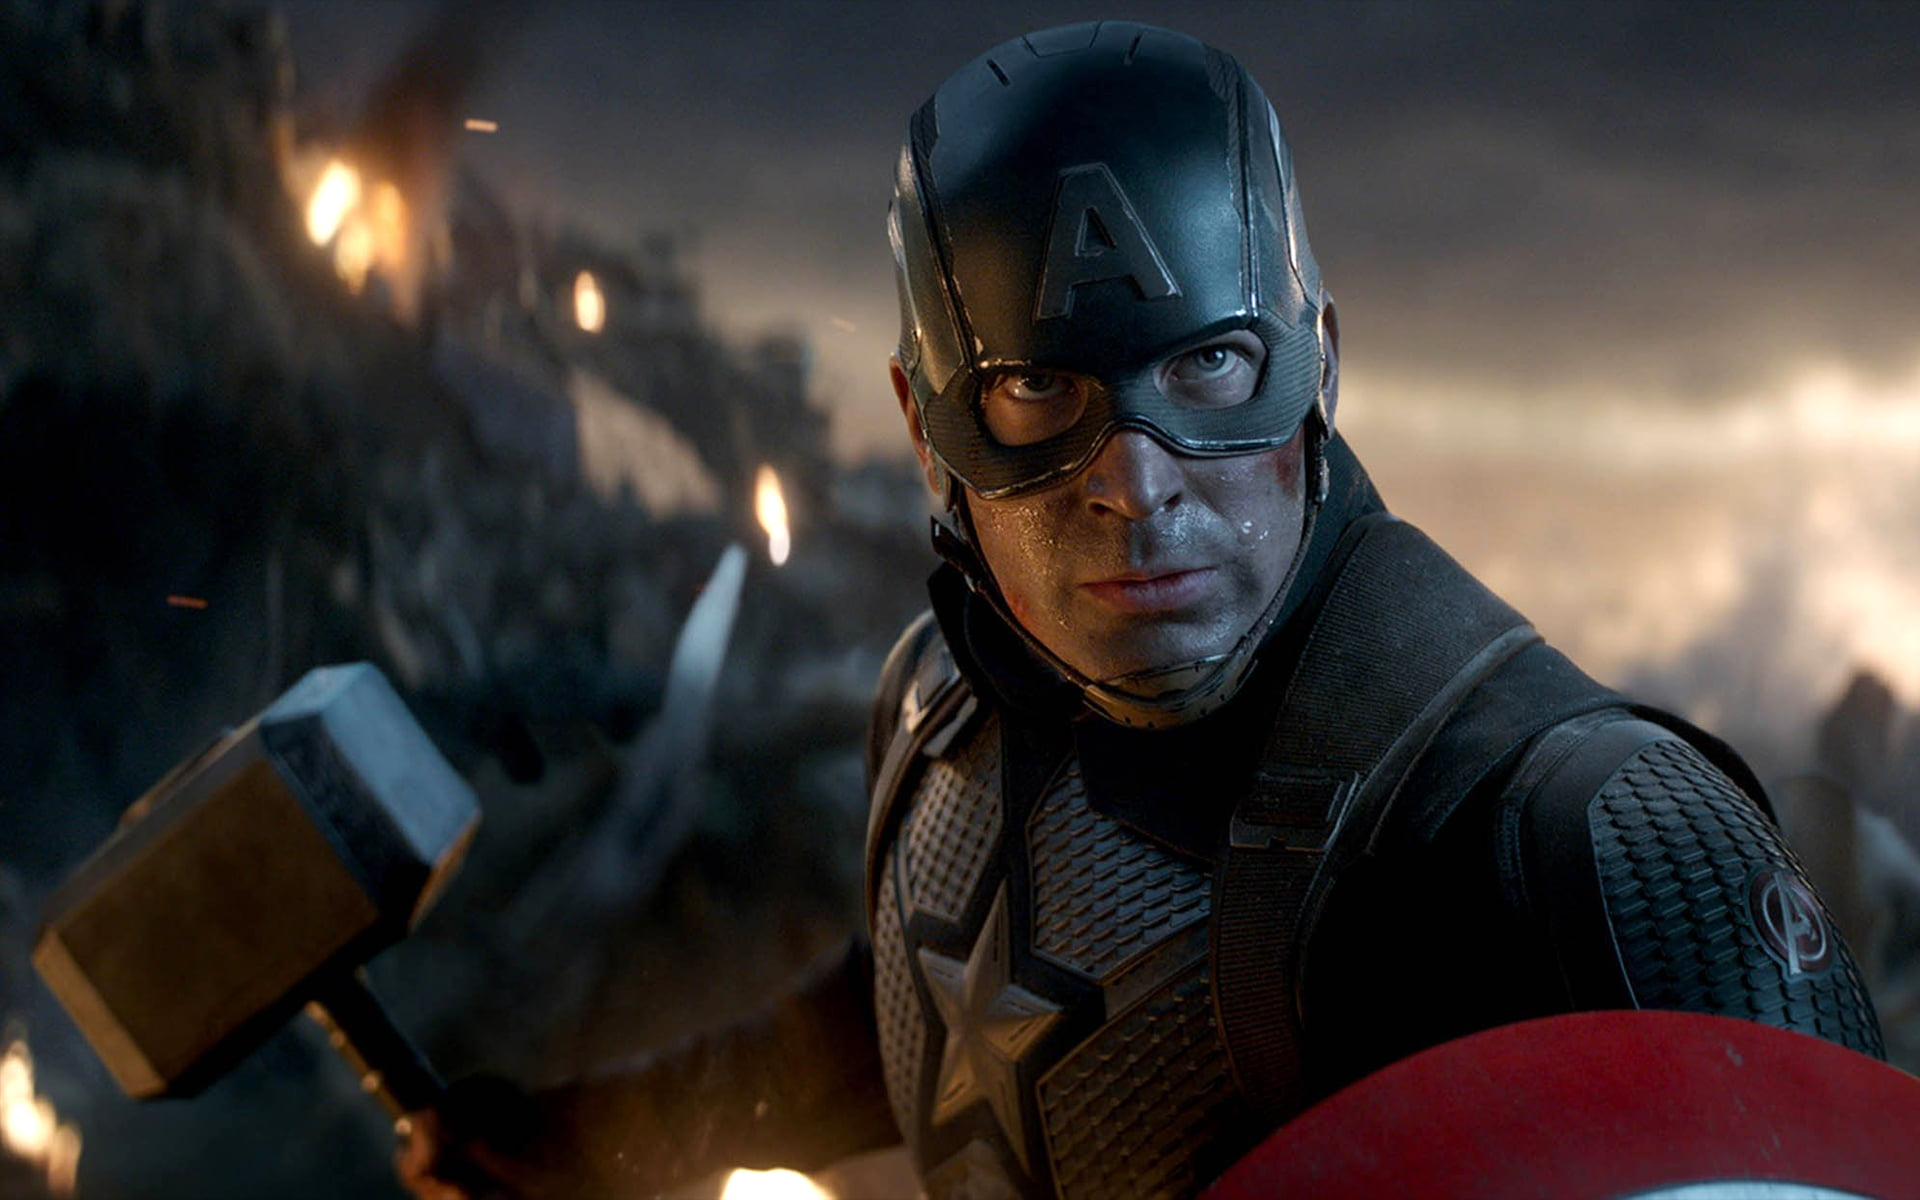 Avengers Endgame wallpaper, Captain America, Marvel Cinematic Universe